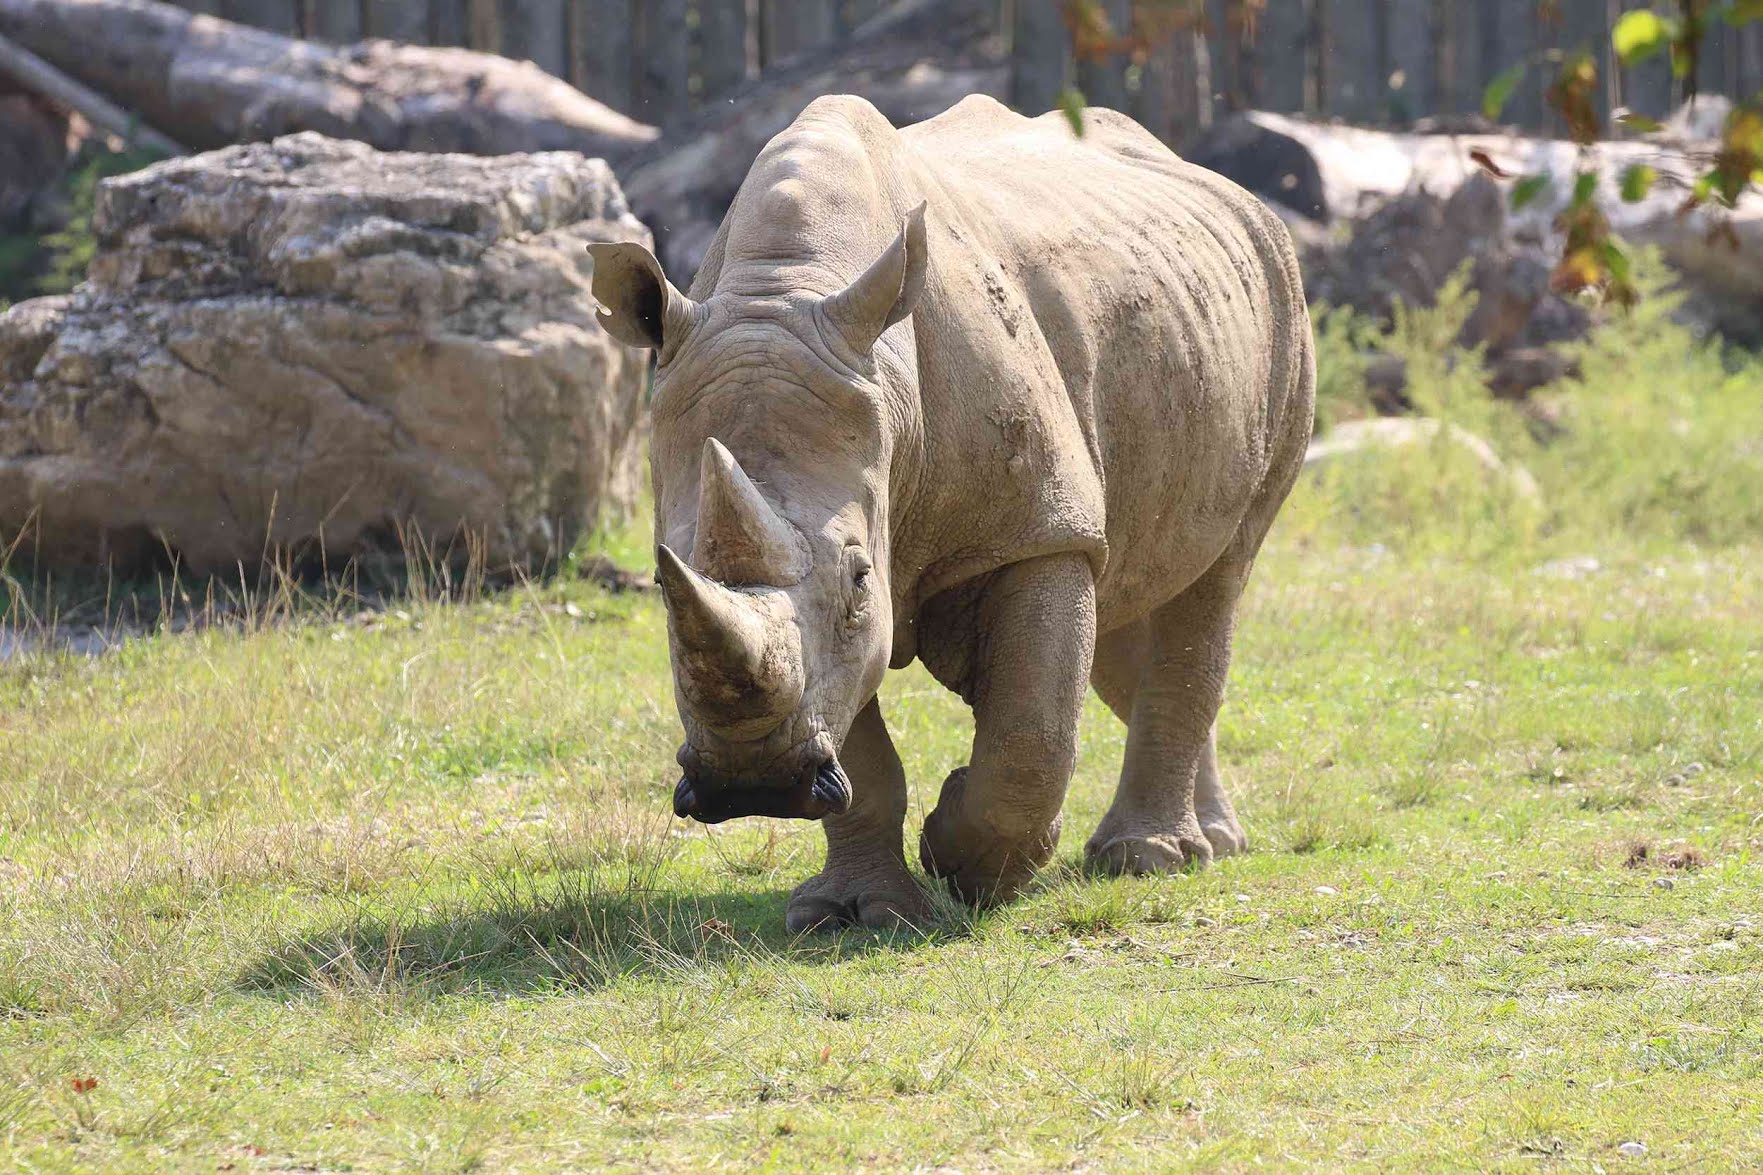 وفاة "الجد توبي" أكبر وحيد قرن أبيض في العالم حيث توقف قلبه أثناء ذهابه للنوم ليلاً